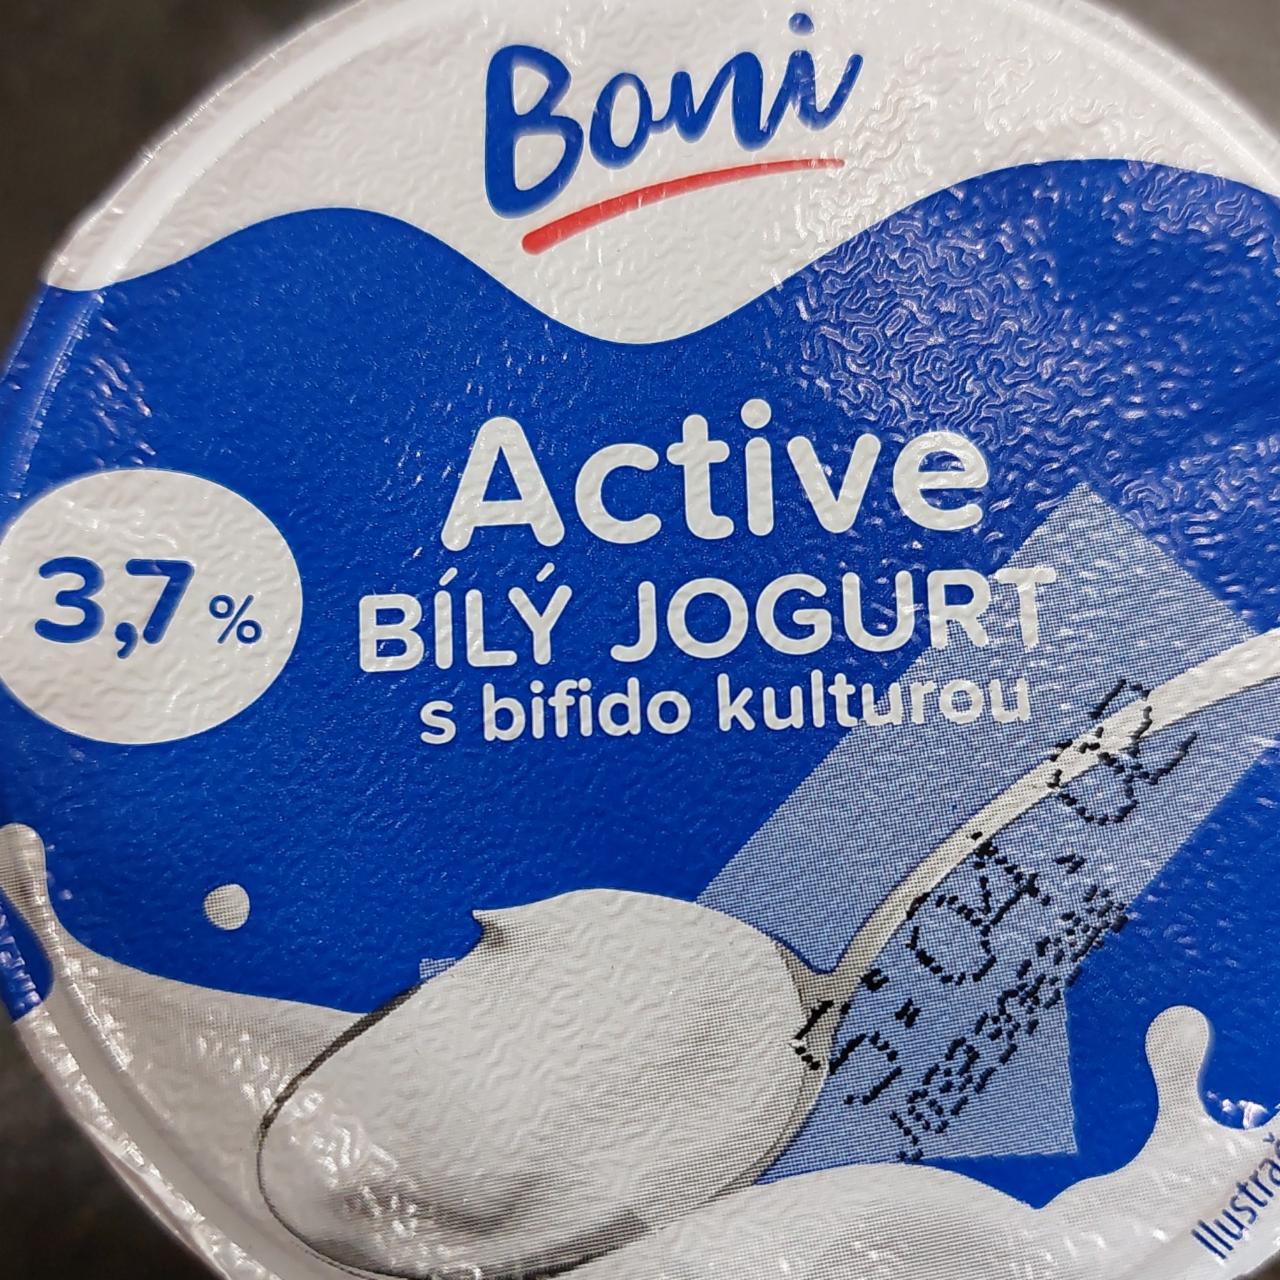 Fotografie - Active bílý jogurt s bifido kulturou 3,7% Boni